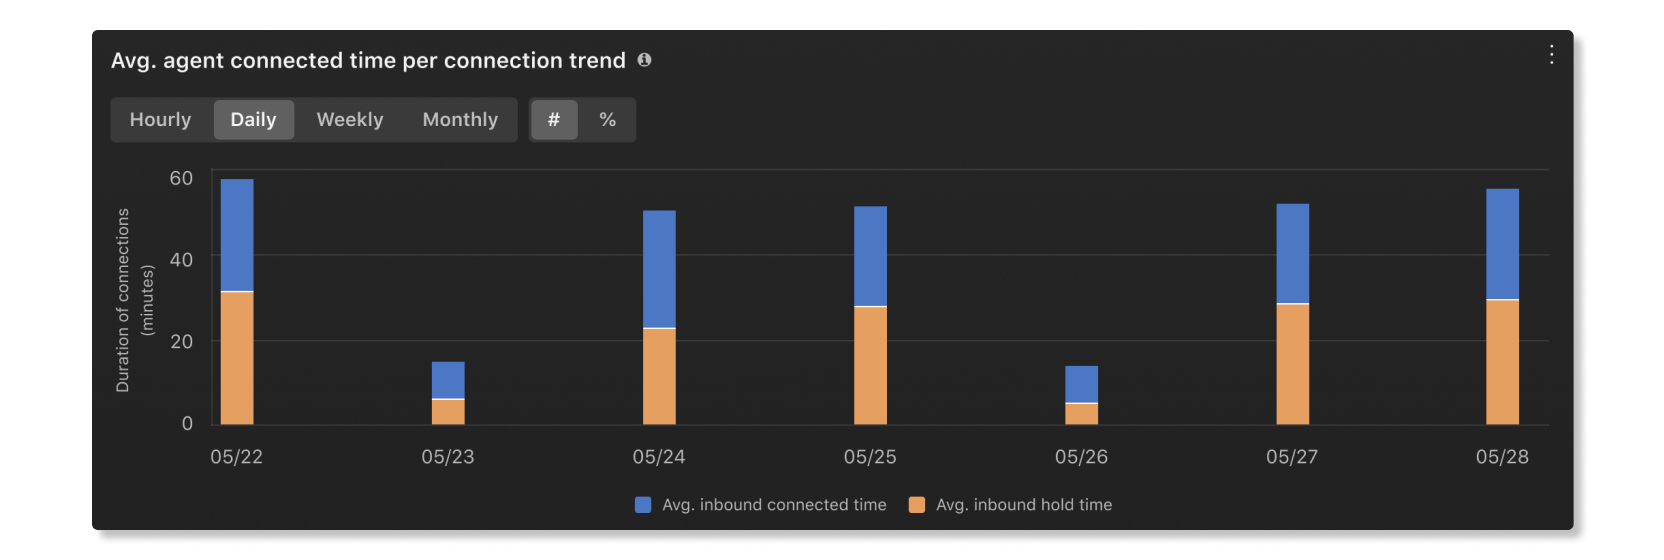 Gráfico de tendencias de tiempo medio conectado por agente por conexión en estadísticas de agente de análisis de Customer Essentials